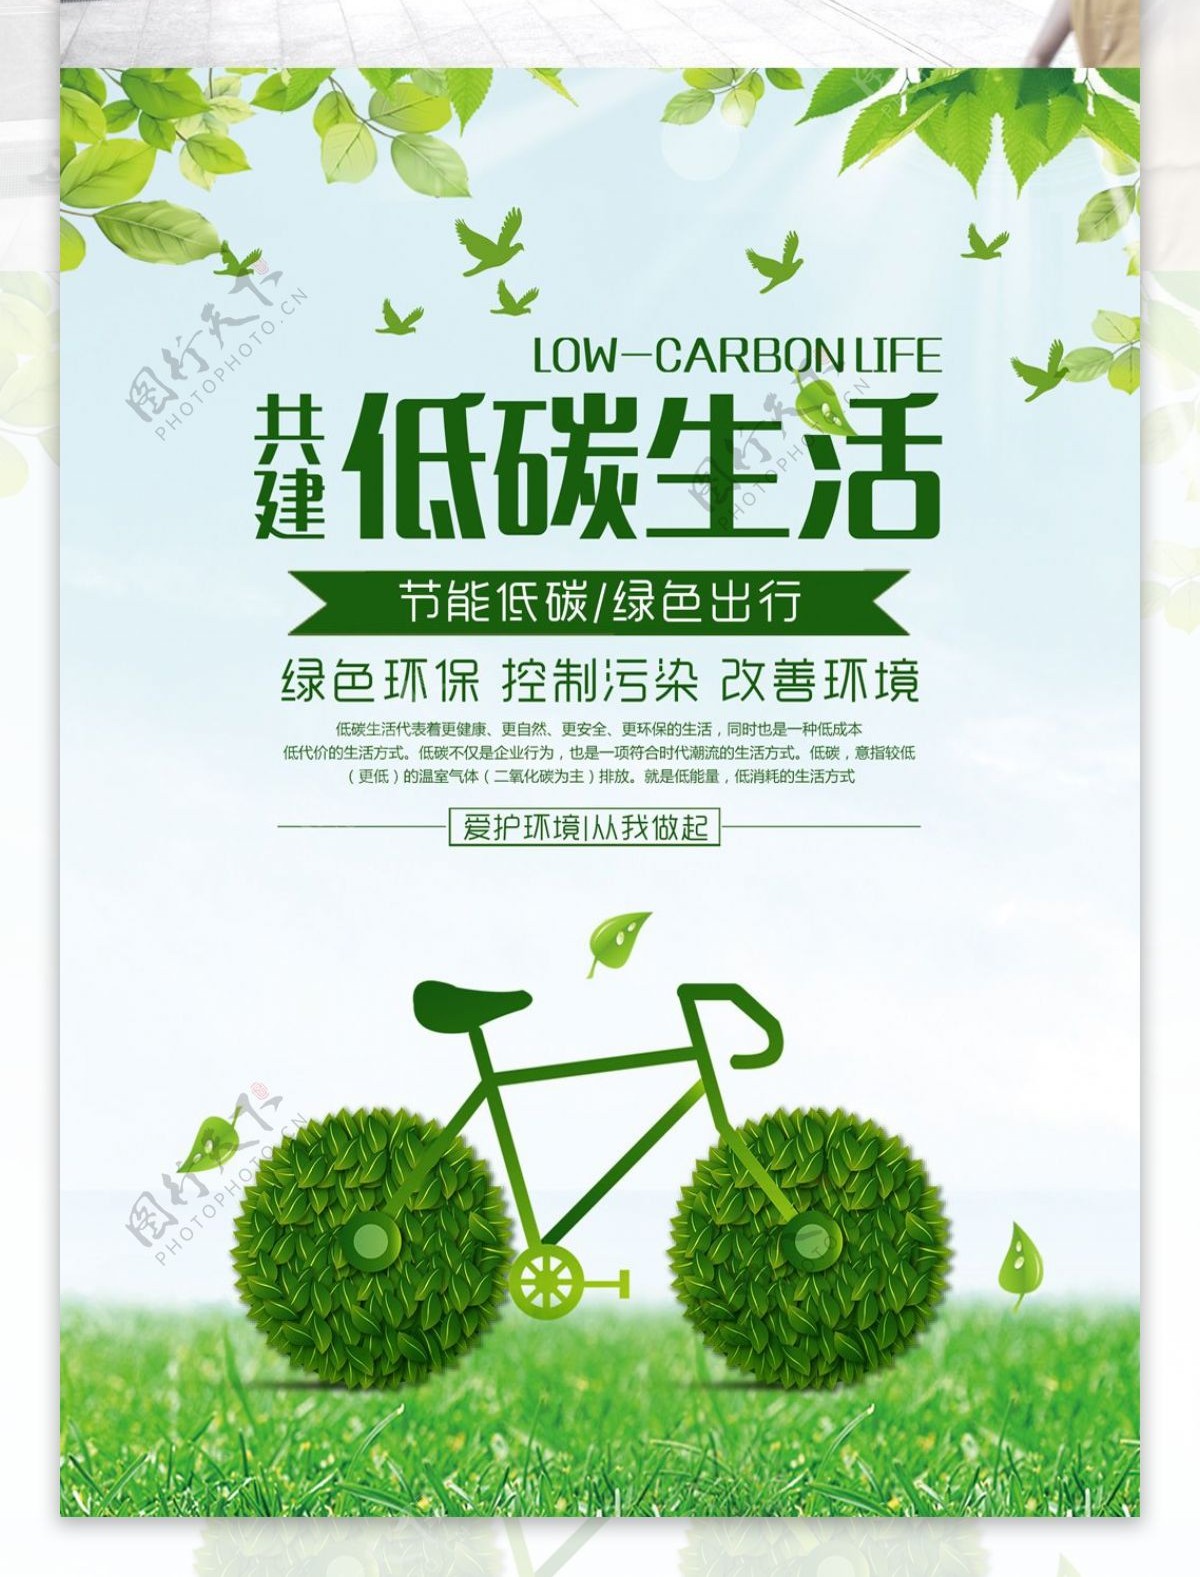 时尚清新绿色爱护环境低碳出行公益宣传海报